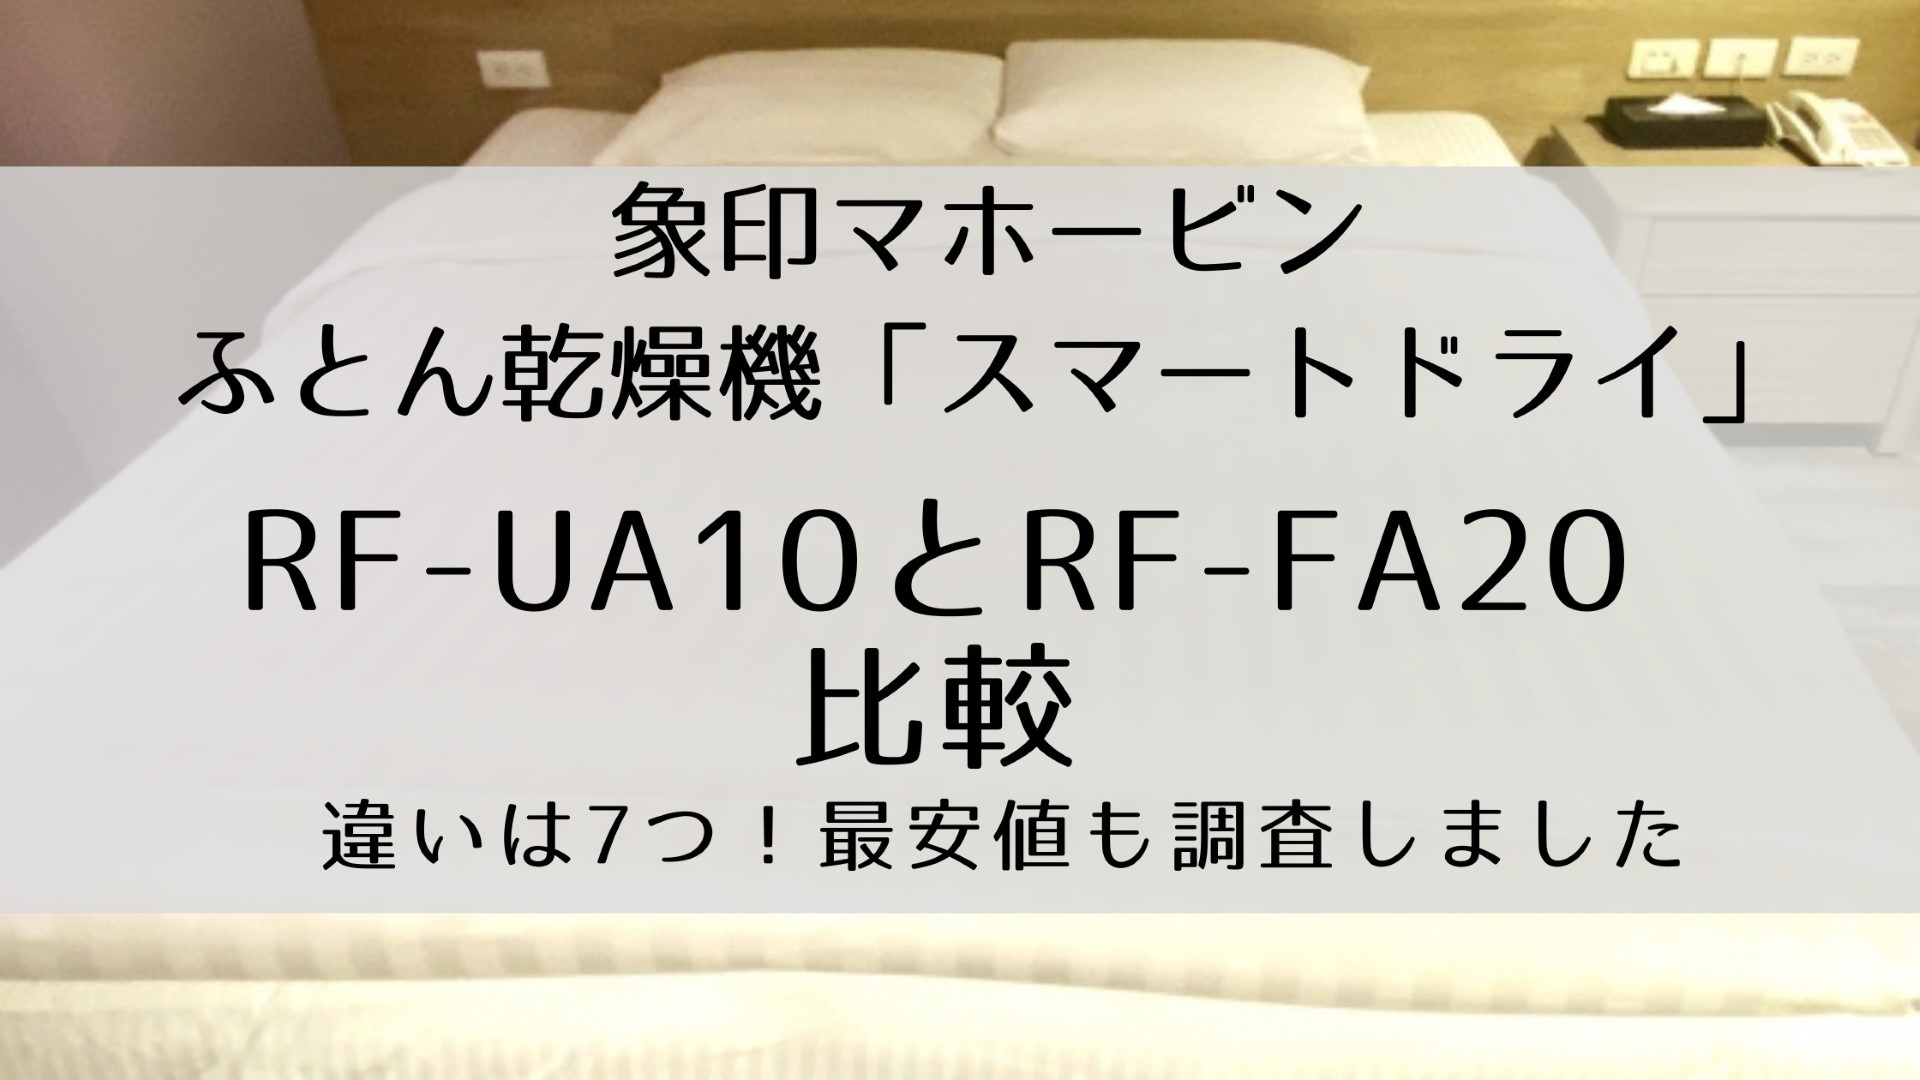 ZOJIRUSHI RF-FA20(HA) GRAY